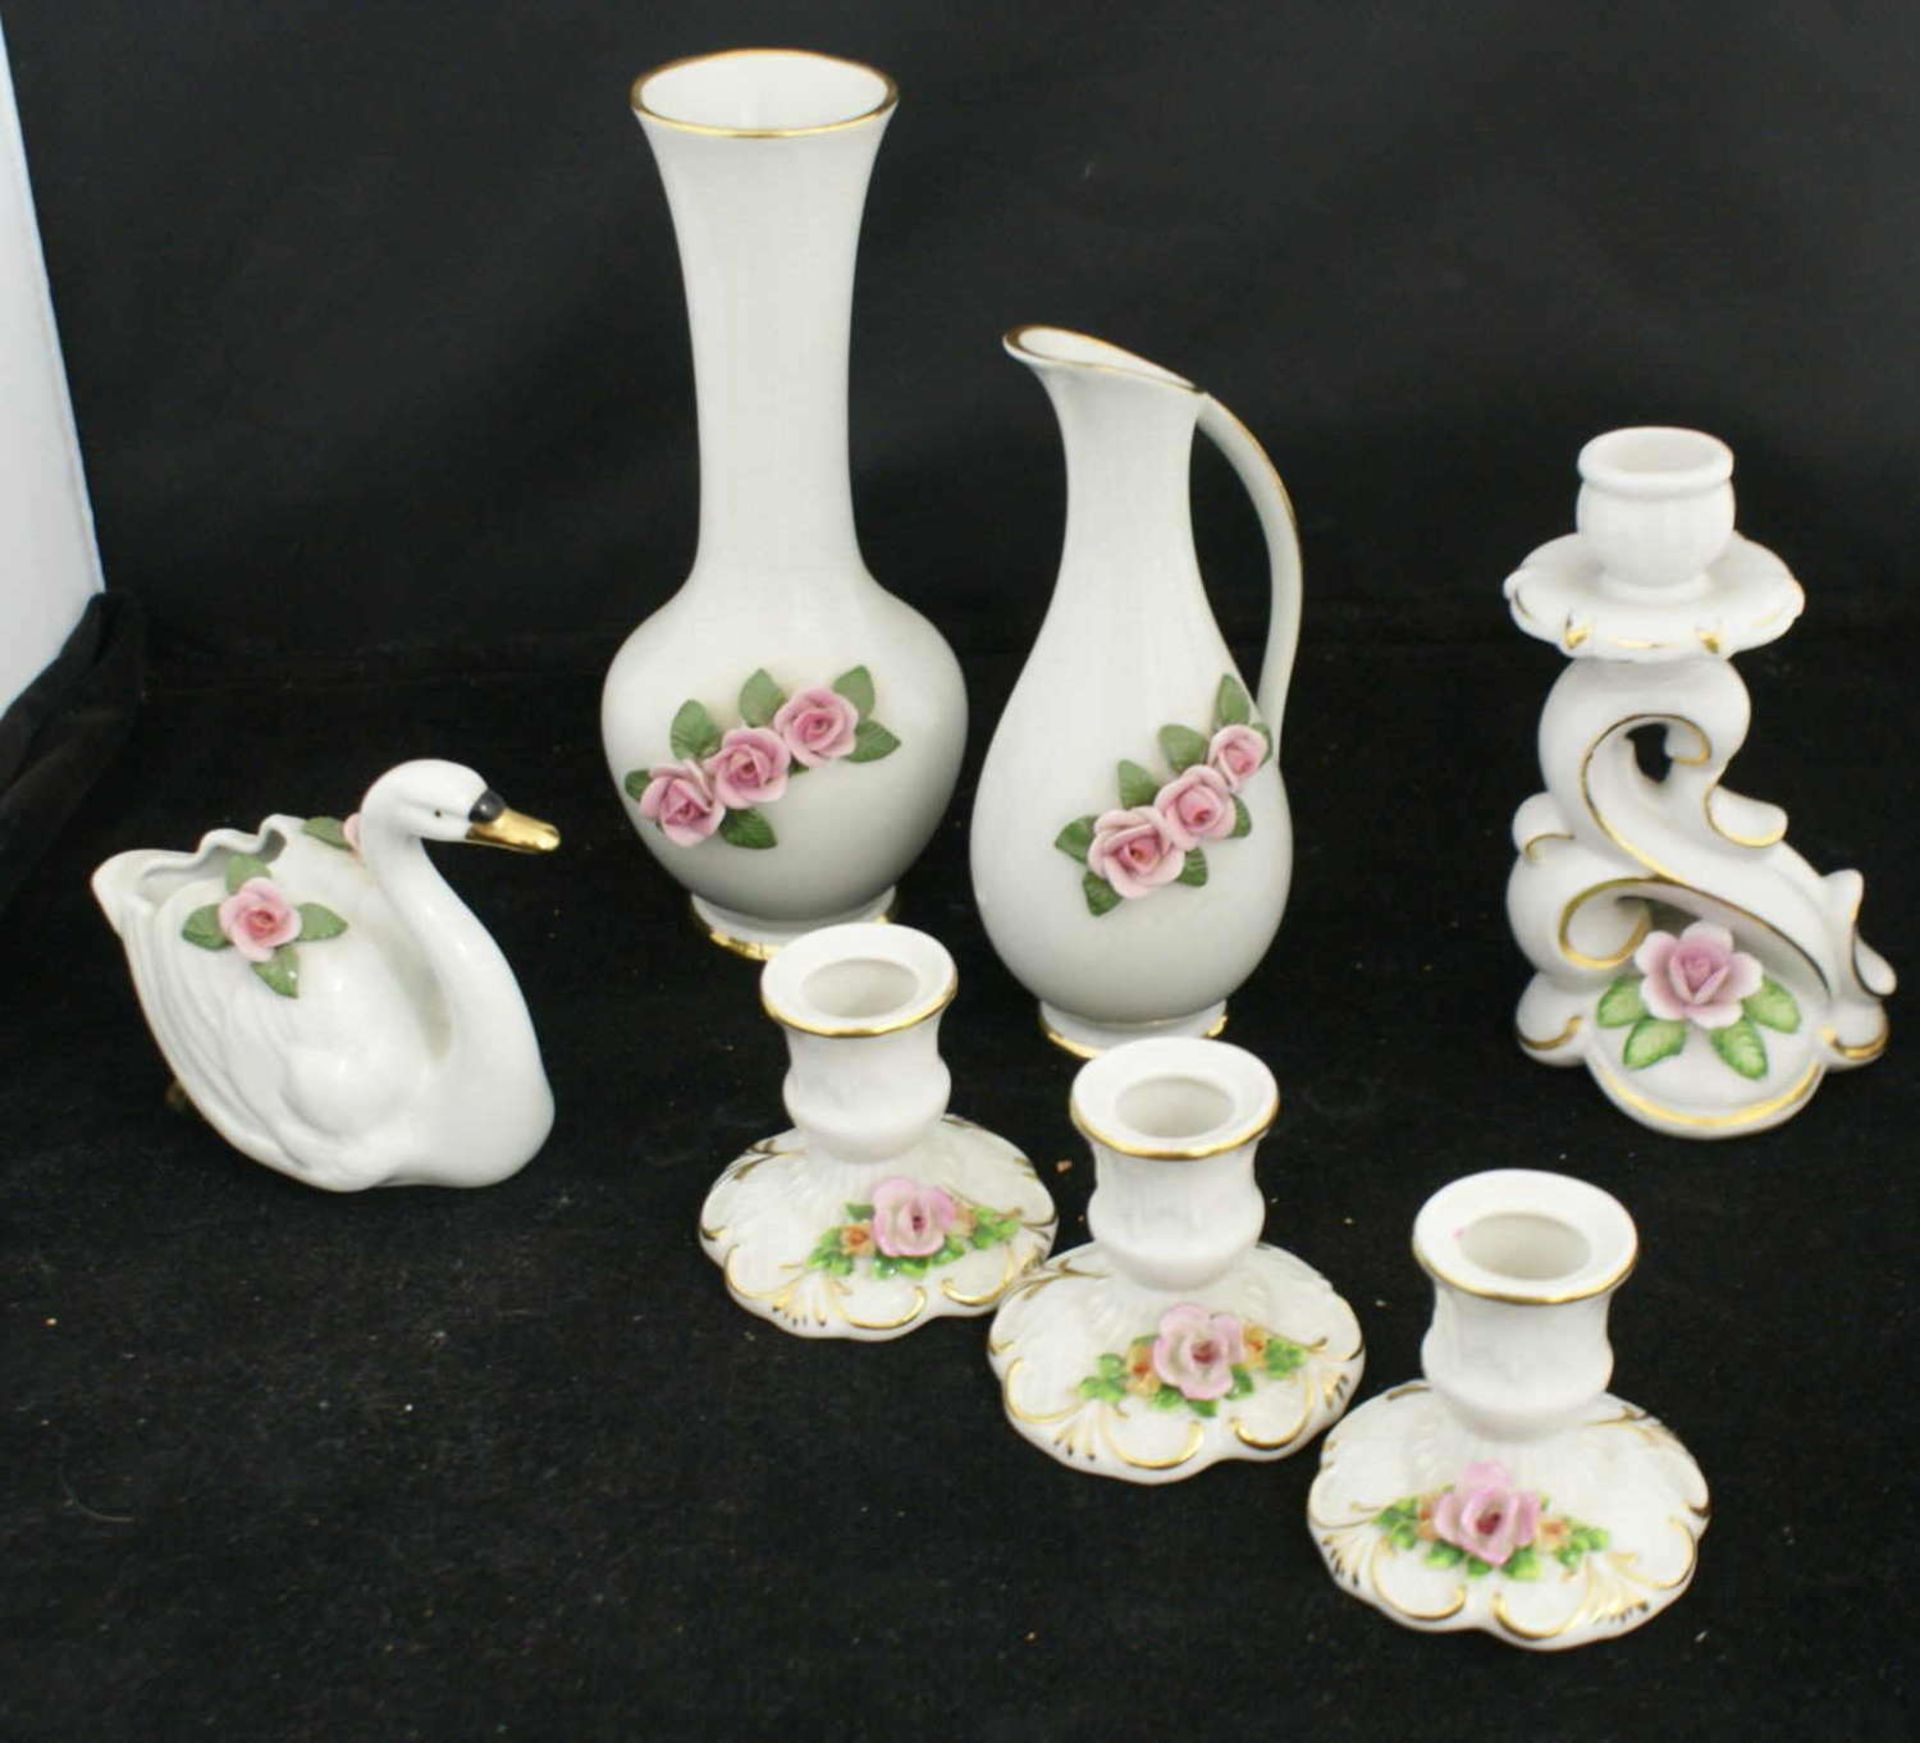 Porzellankonvolut, bestehend aus 1 Vase, 1 Henkelvase, 4 Kerzenständer, sowie 1 Schwan. Alles